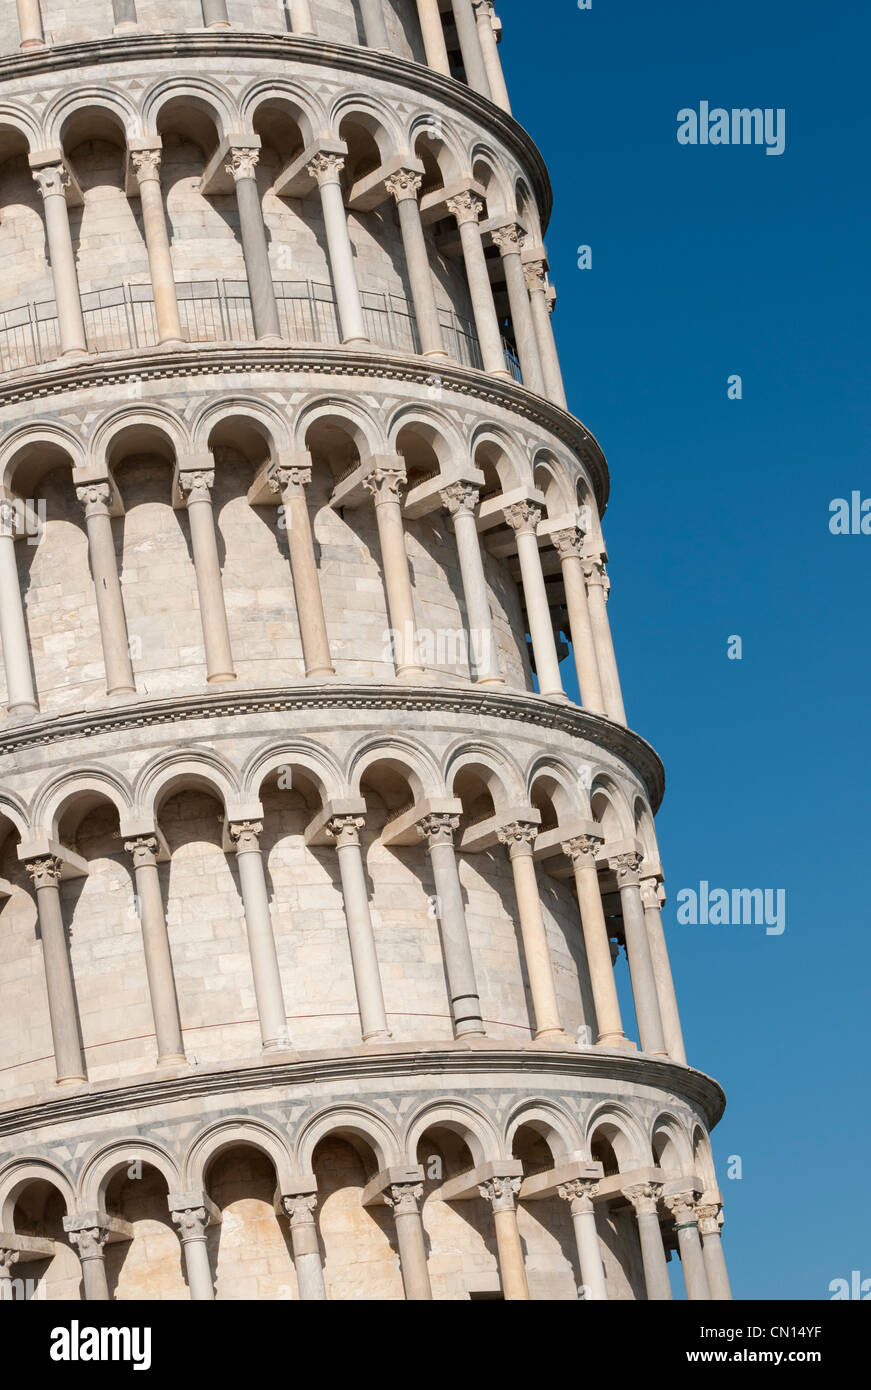 La Torre Inclinada de Pisa (Torre inclinada), Toscana, Italia (Toscana) Foto de stock